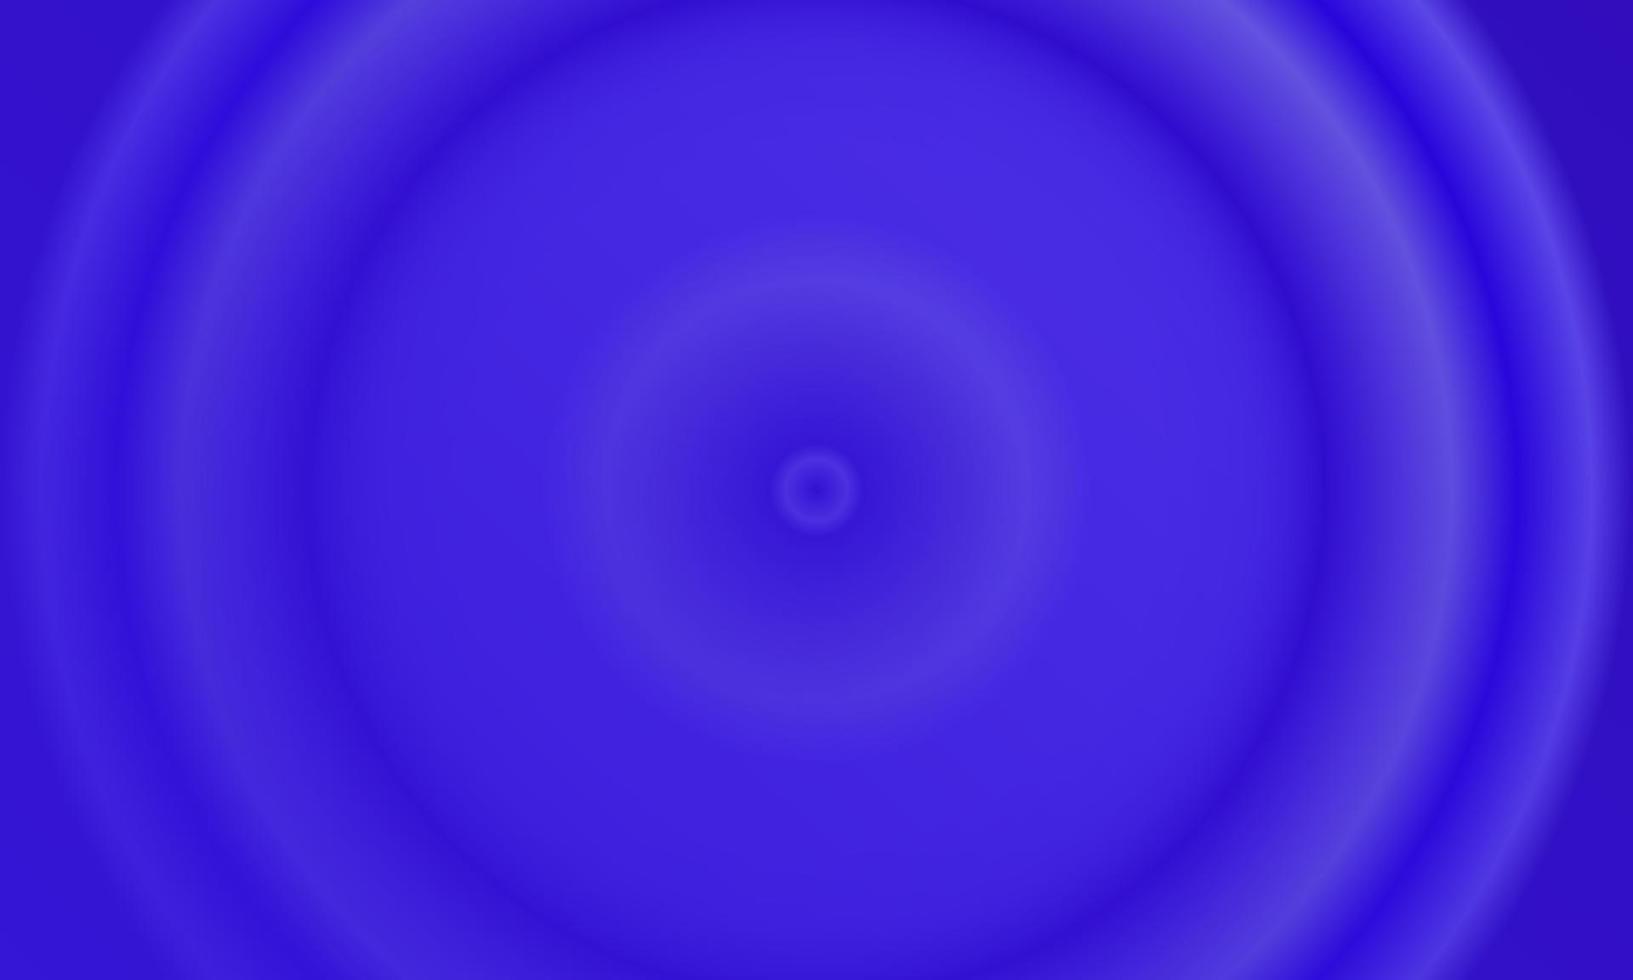 Nền Dark Blue Radial Gradient Abstract Background có sắc xanh quyến rũ với hiệu ứng gradient radial sẽ mang lại cho bạn một trải nghiệm tuyệt vời khi sử dụng. Hãy thử xem hình ảnh này nhé.